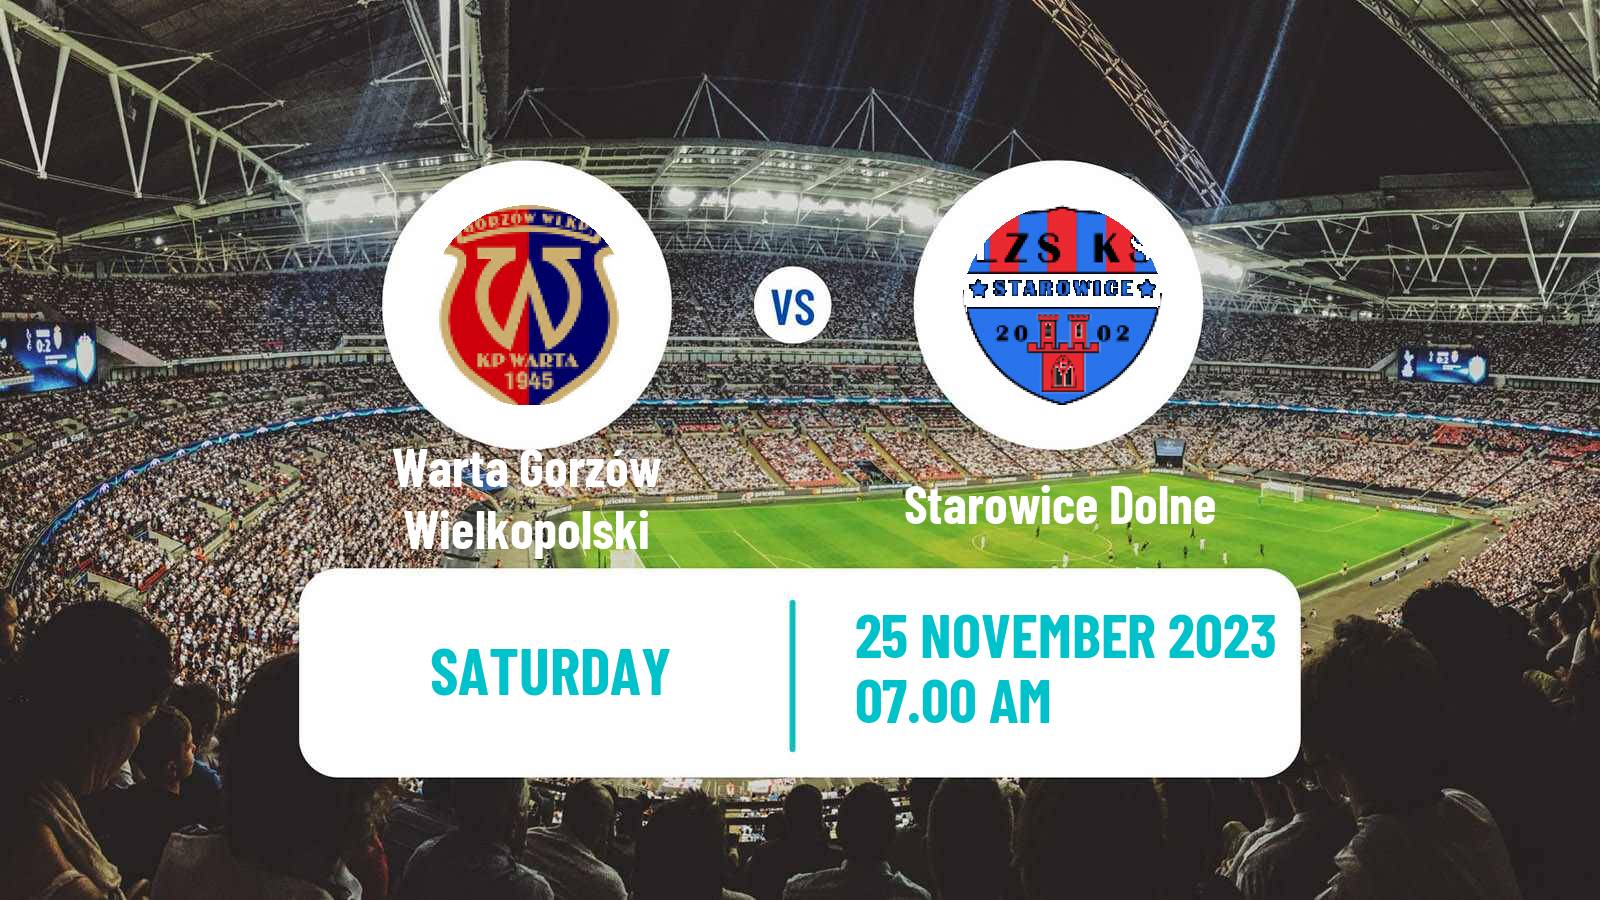 Soccer Polish Division 3 - Group III Warta Gorzów Wielkopolski - Starowice Dolne